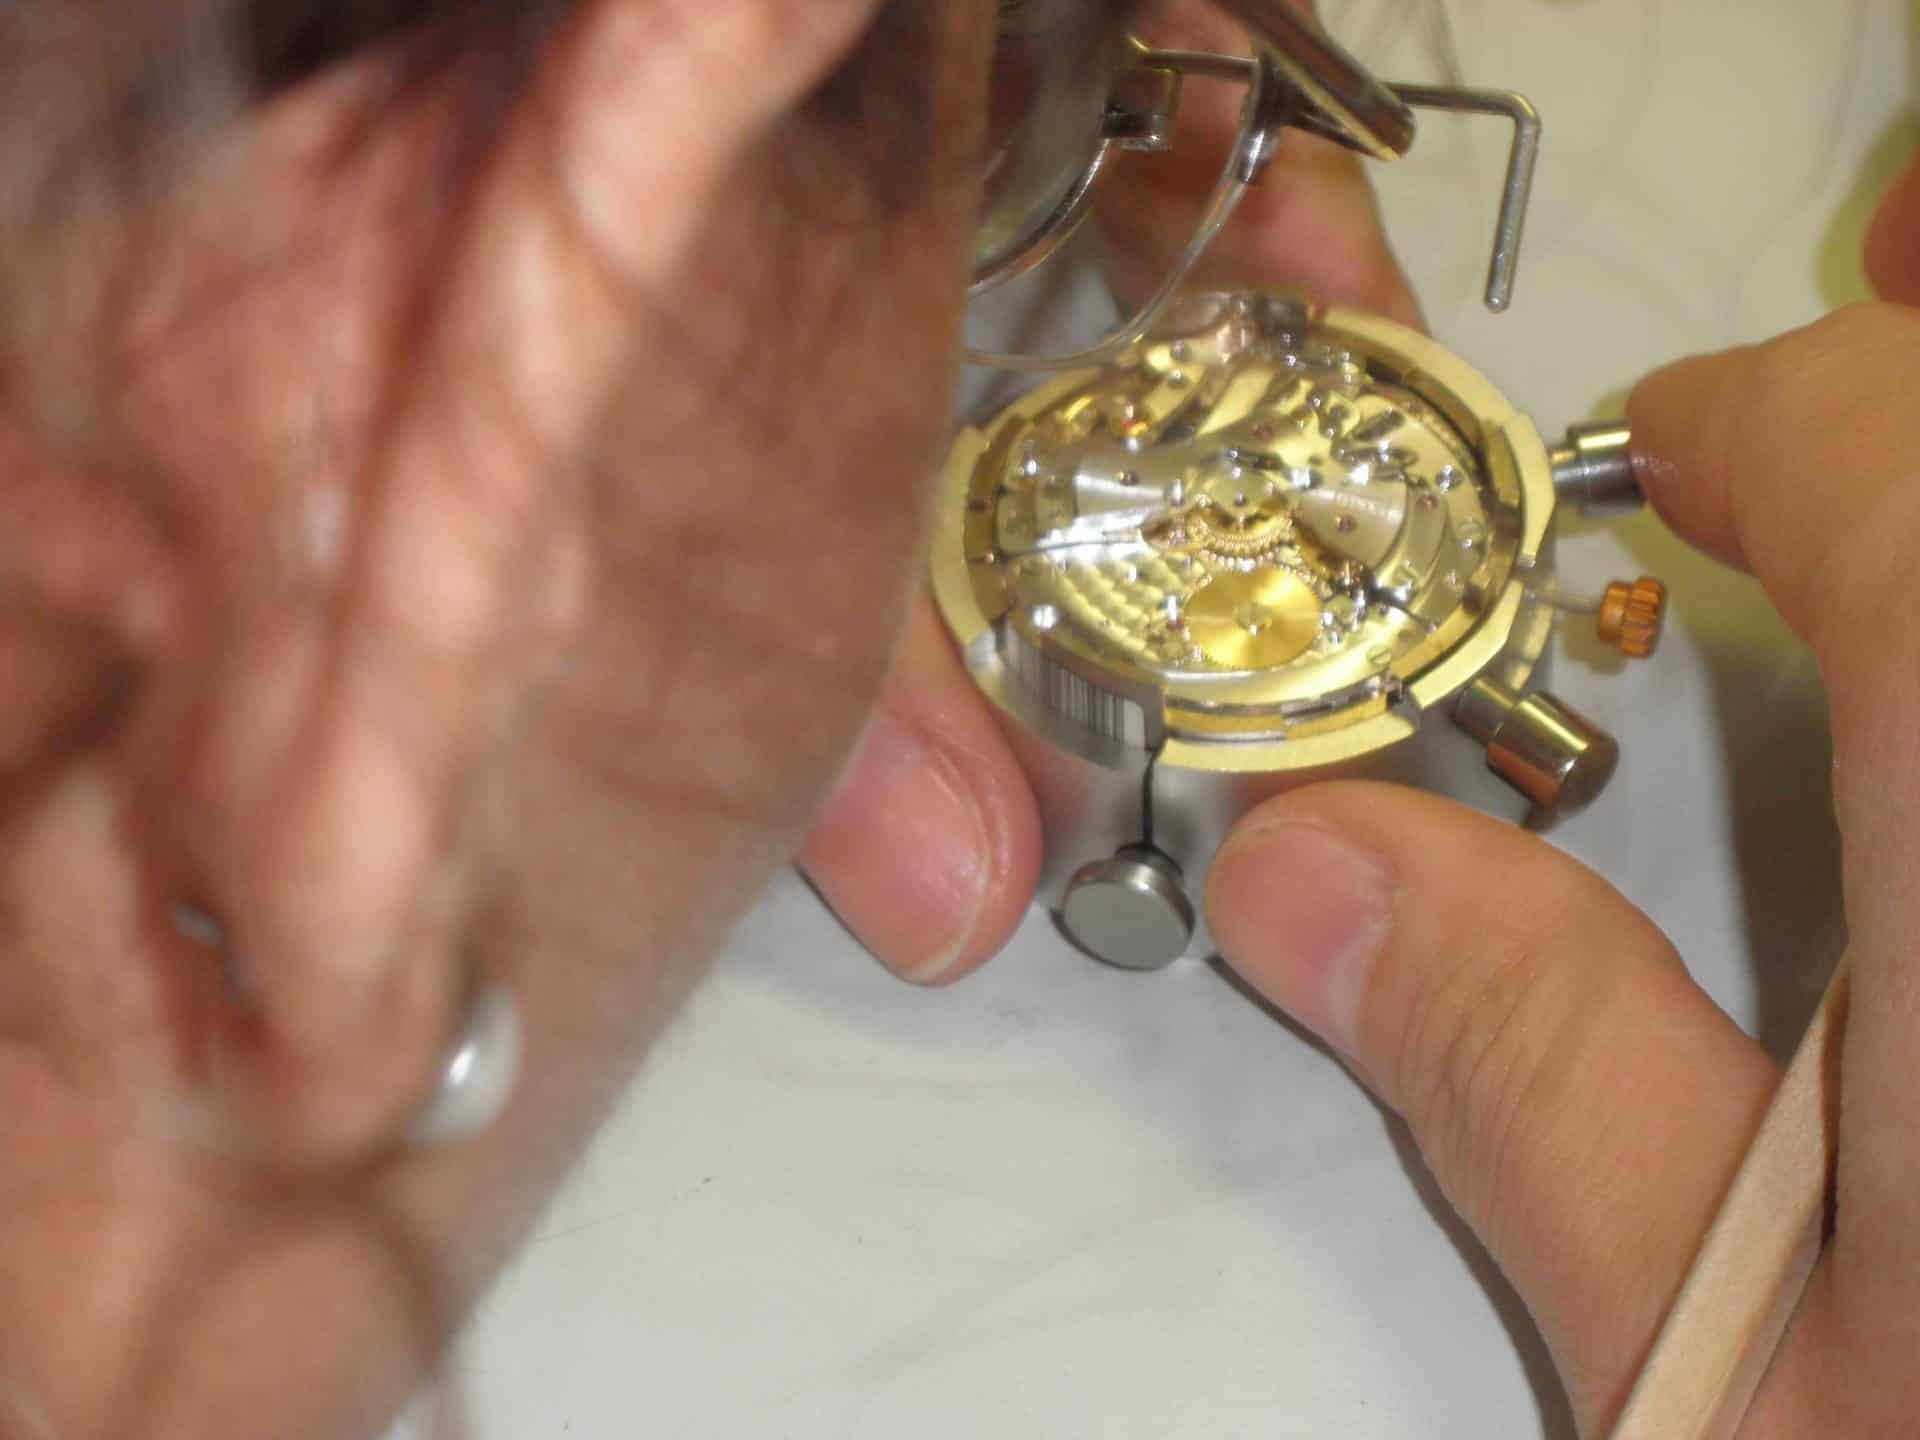 Qualitätskontrolle einer Rolex-Mitarbeiterin der Funktionen des Chronographenkalibers 4130